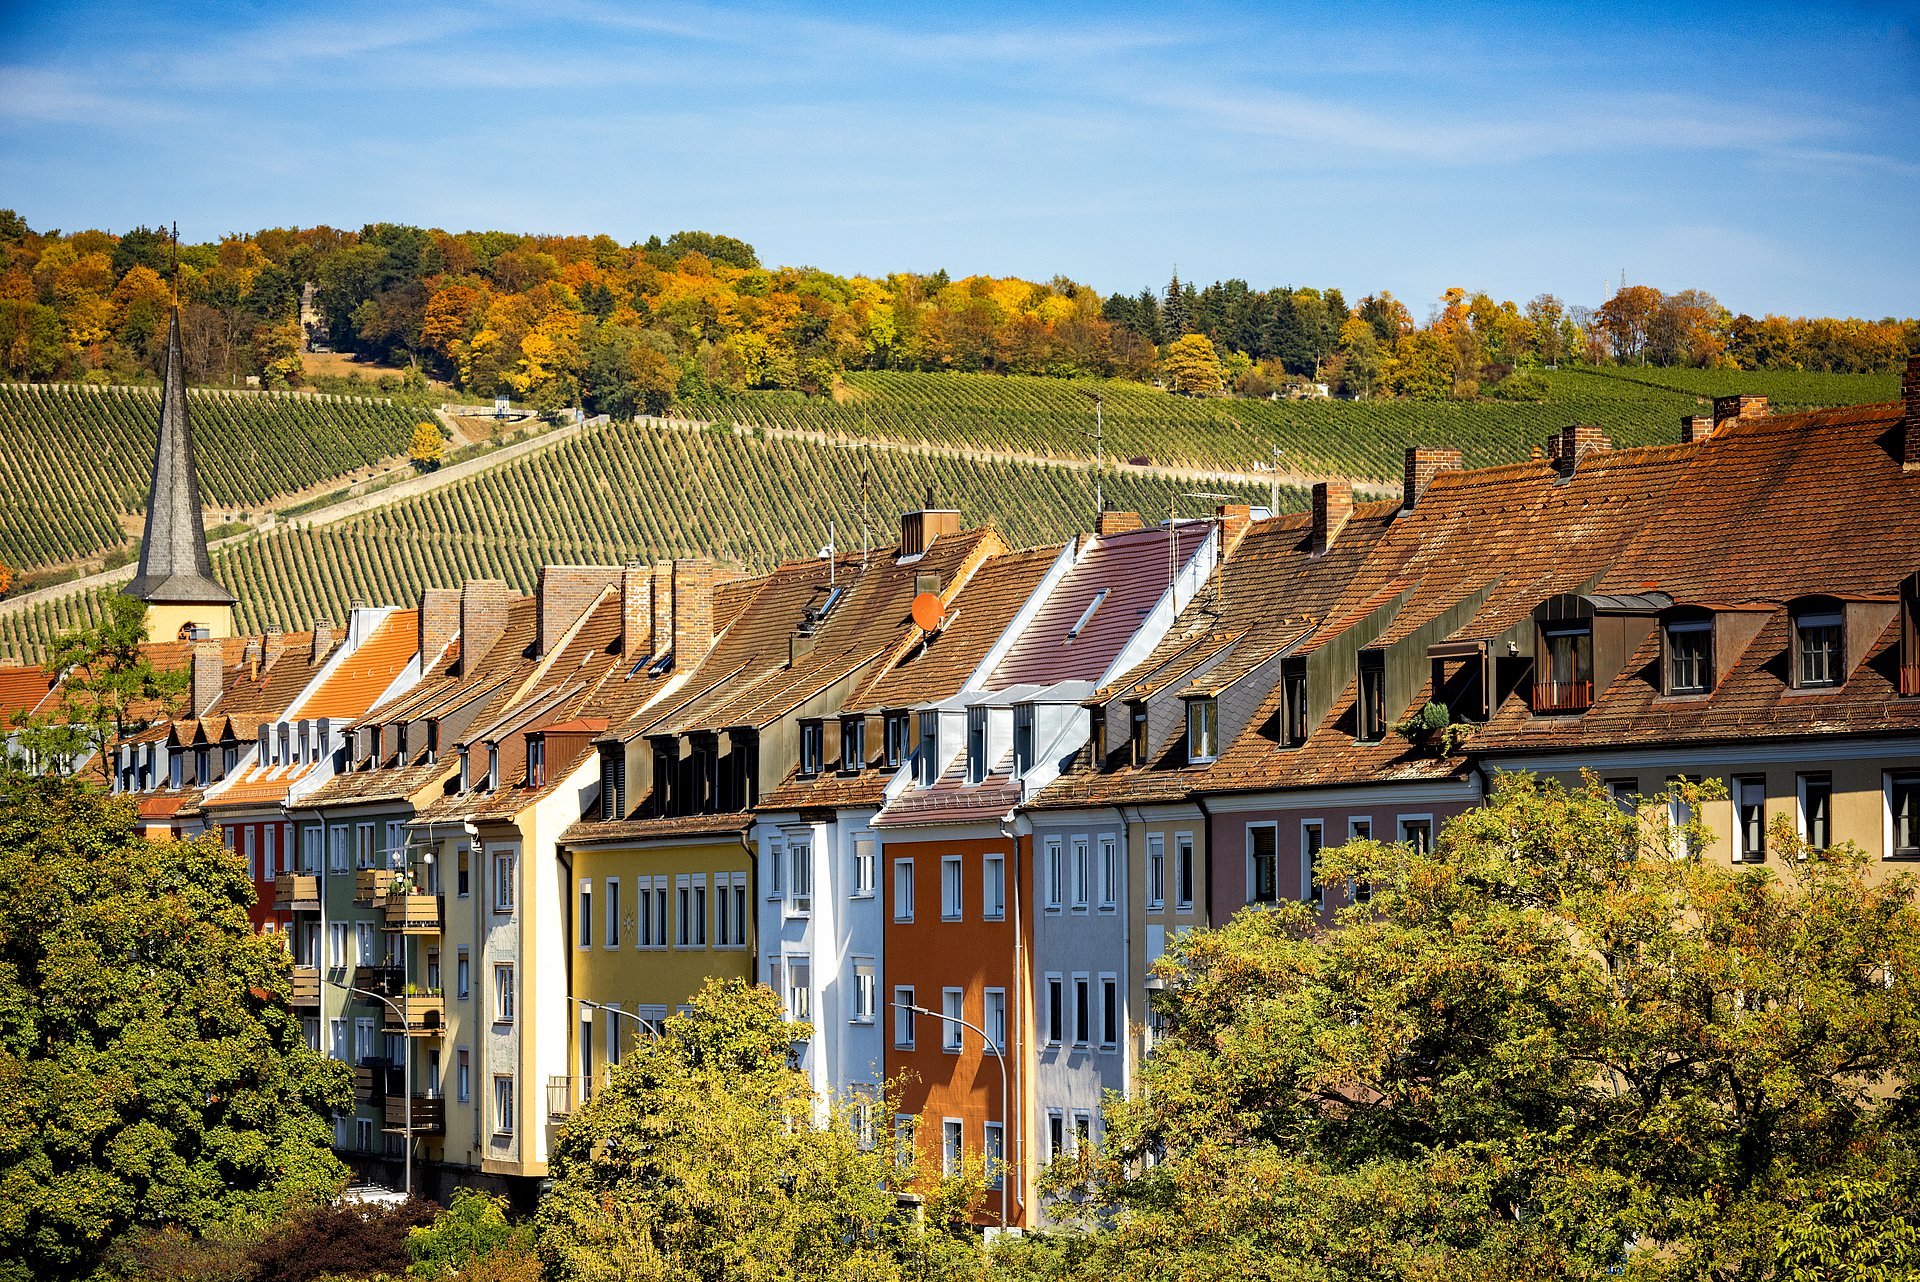 Ein Forschungsteam unter Federführung der TUM hat im Rahmen einer empirischen Studie in Würzburg drei Jahre lang untersucht, welche Auswirkungen Stadtbegrünung auf das Klima in der Stadt hat. 